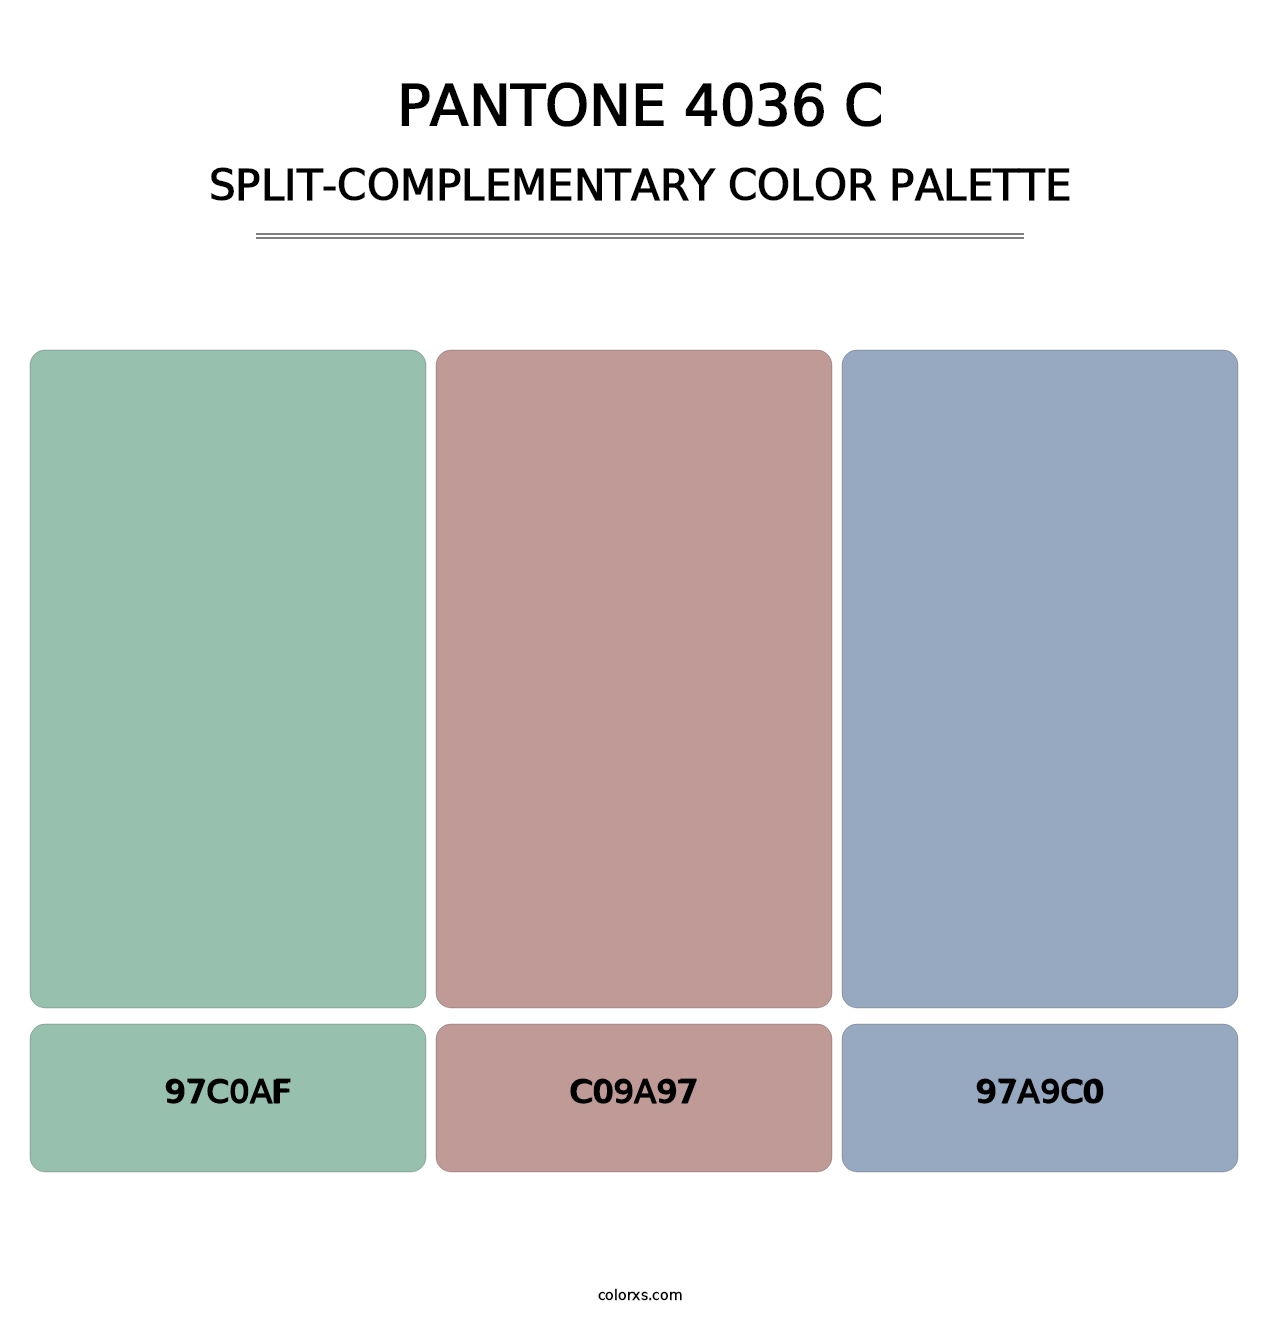 PANTONE 4036 C - Split-Complementary Color Palette